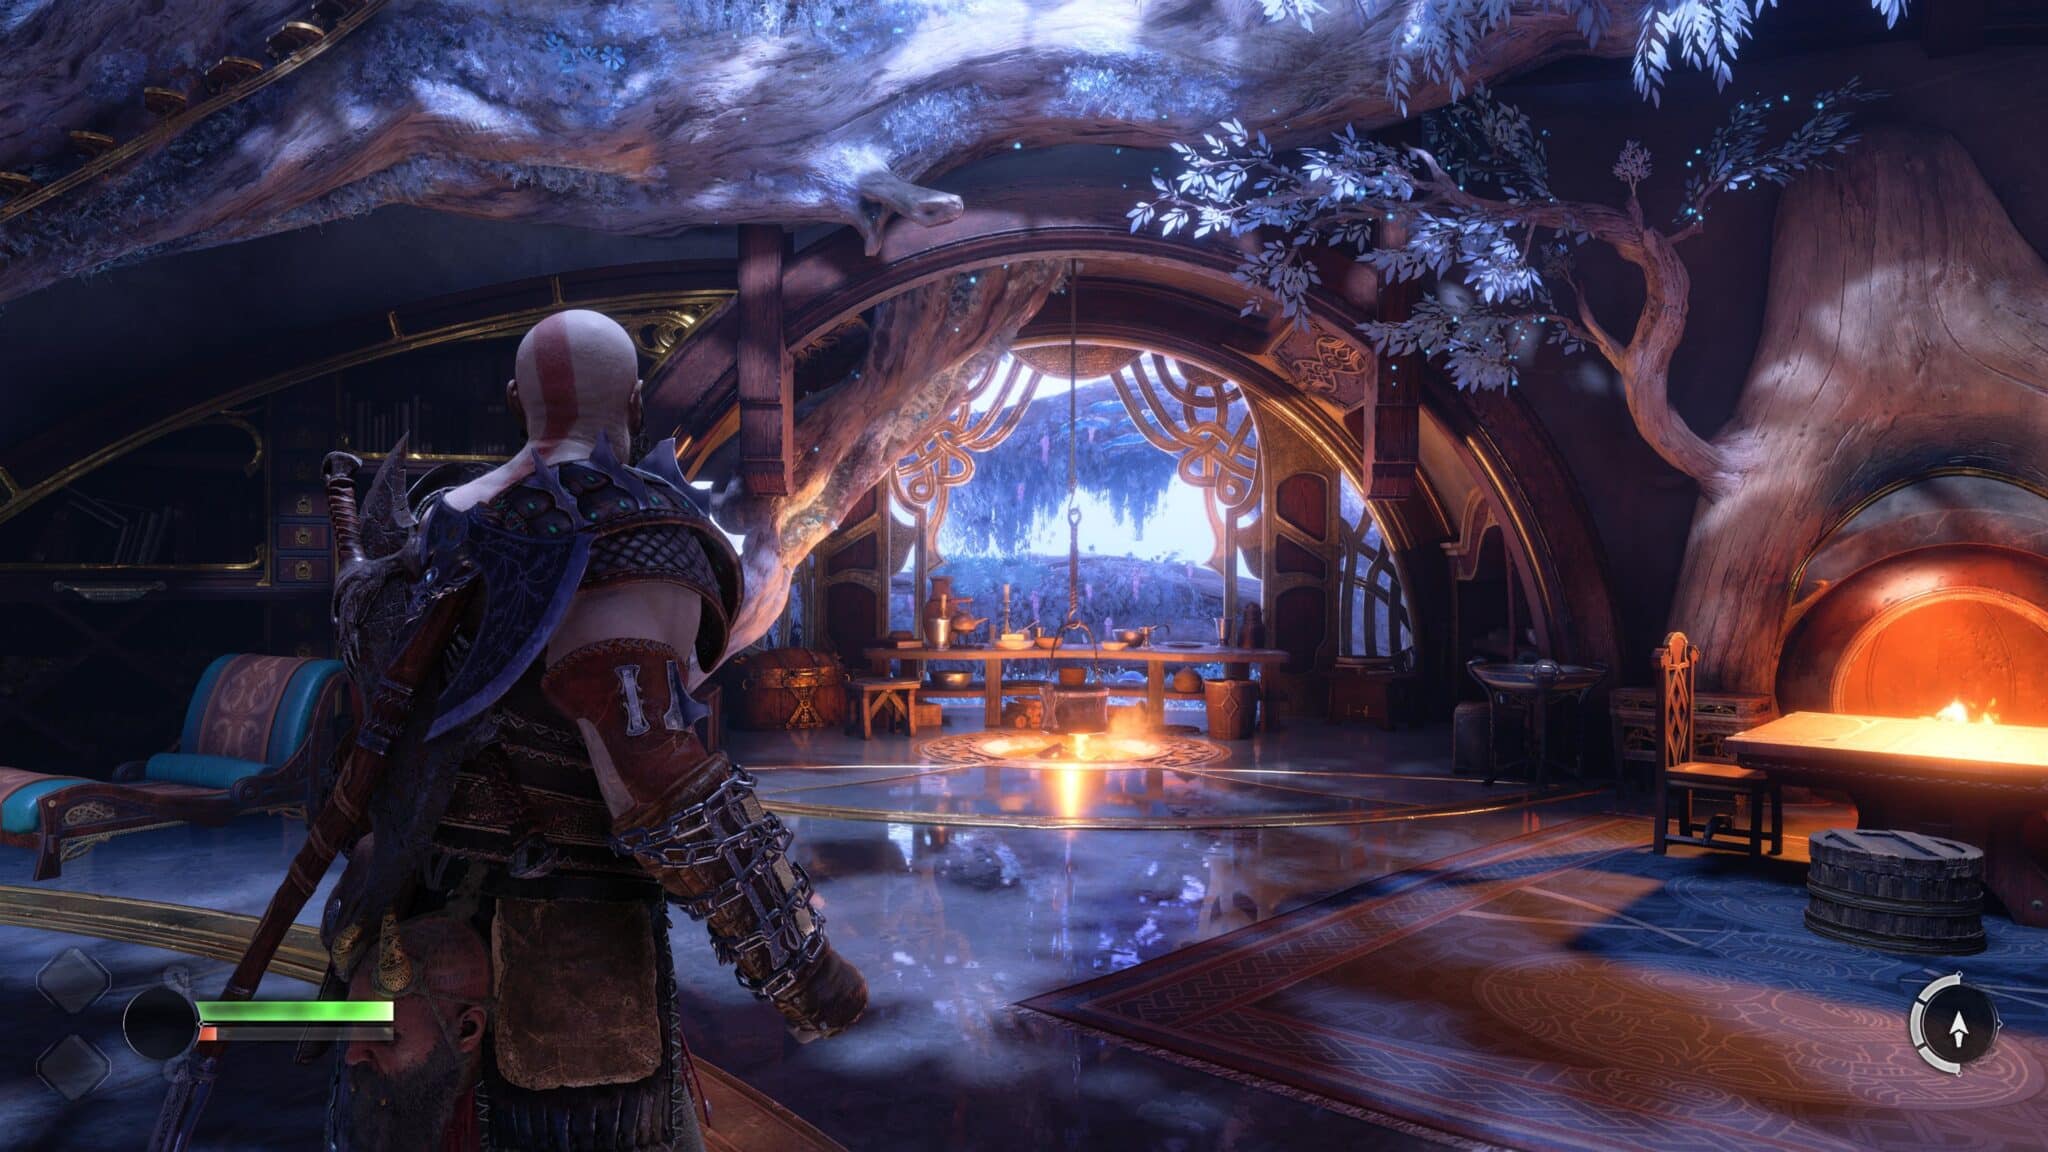 (Tra le loro avventure, Kratos e Atreus si rifugiano regolarmente nella casa dei loro amici nani)